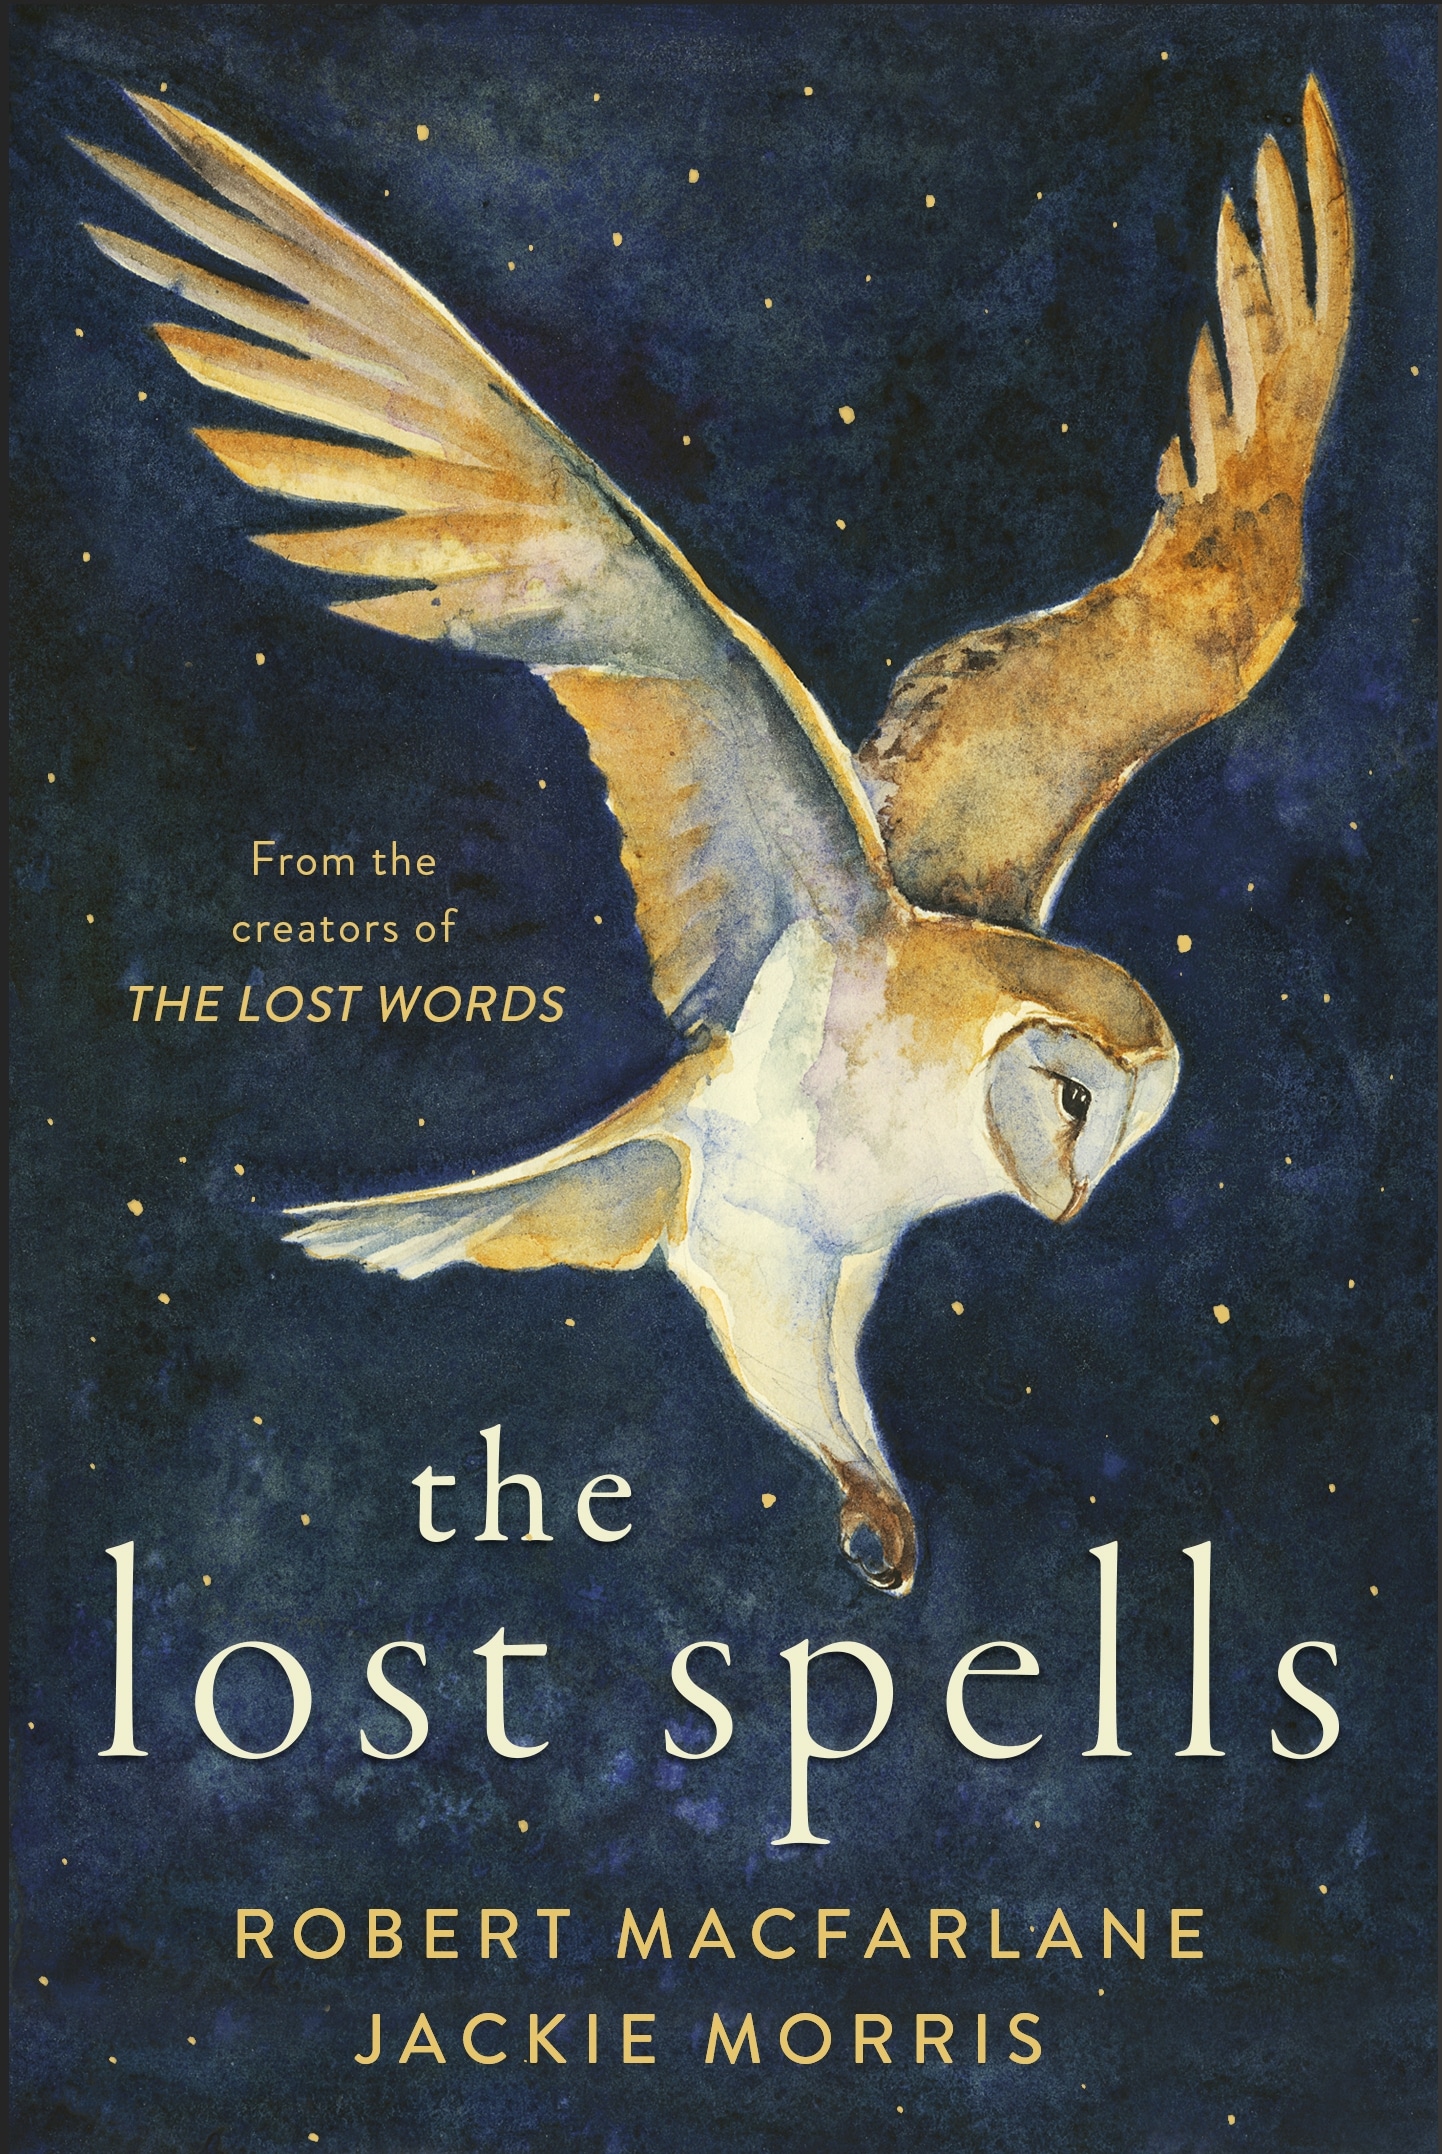 Book “The Lost Spells” by Robert Macfarlane, Jackie Morris — October 1, 2020